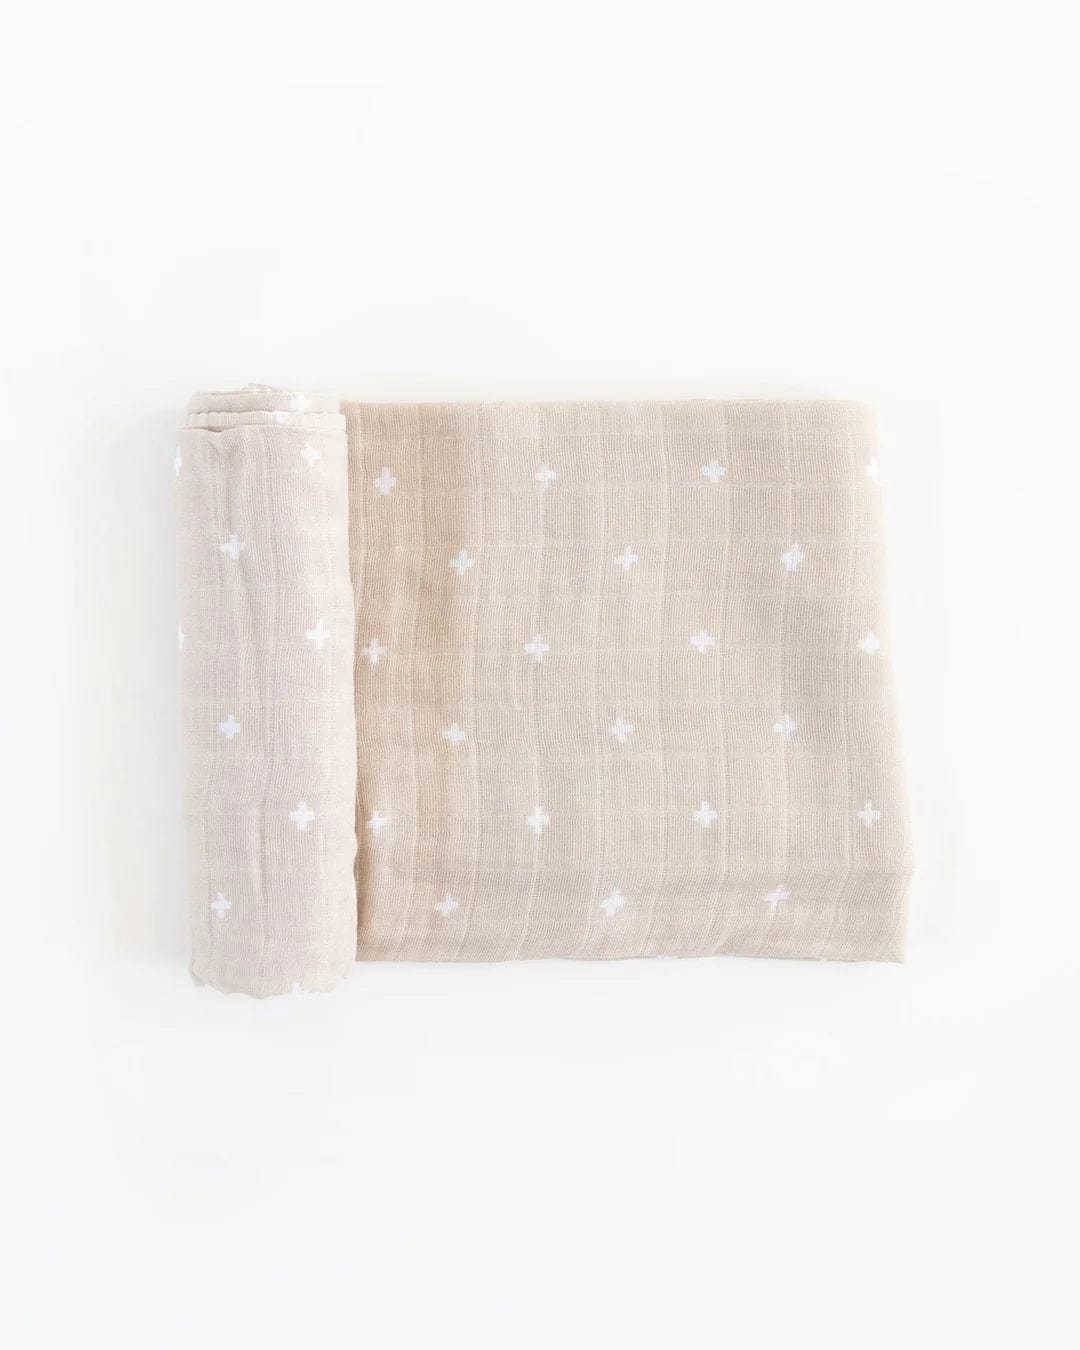 Cotton Muslin Sleepwear Set in Misty Grey color